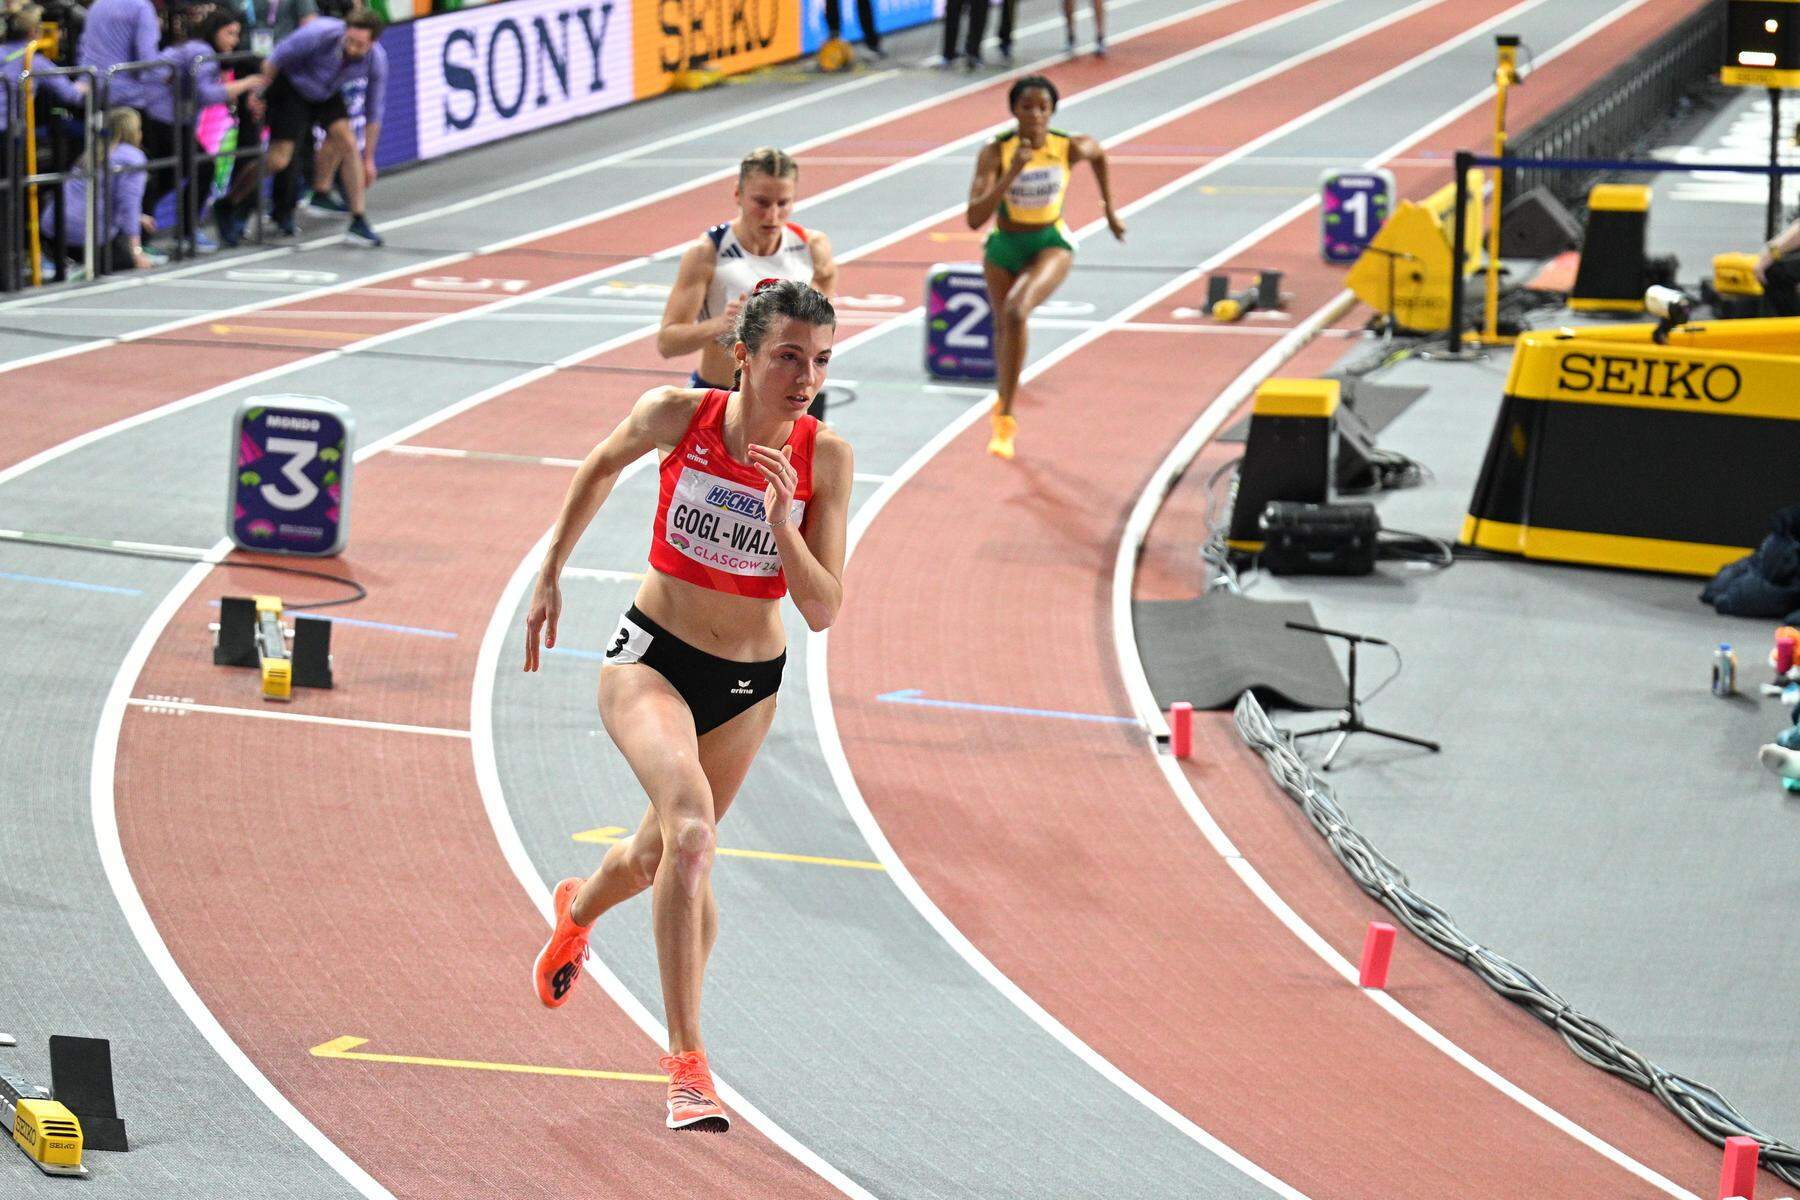 Leichtathletik-WM: Susanne Gogl-Walli mit neuem Rekord bei Weltrekordlauf auf Rang sechs